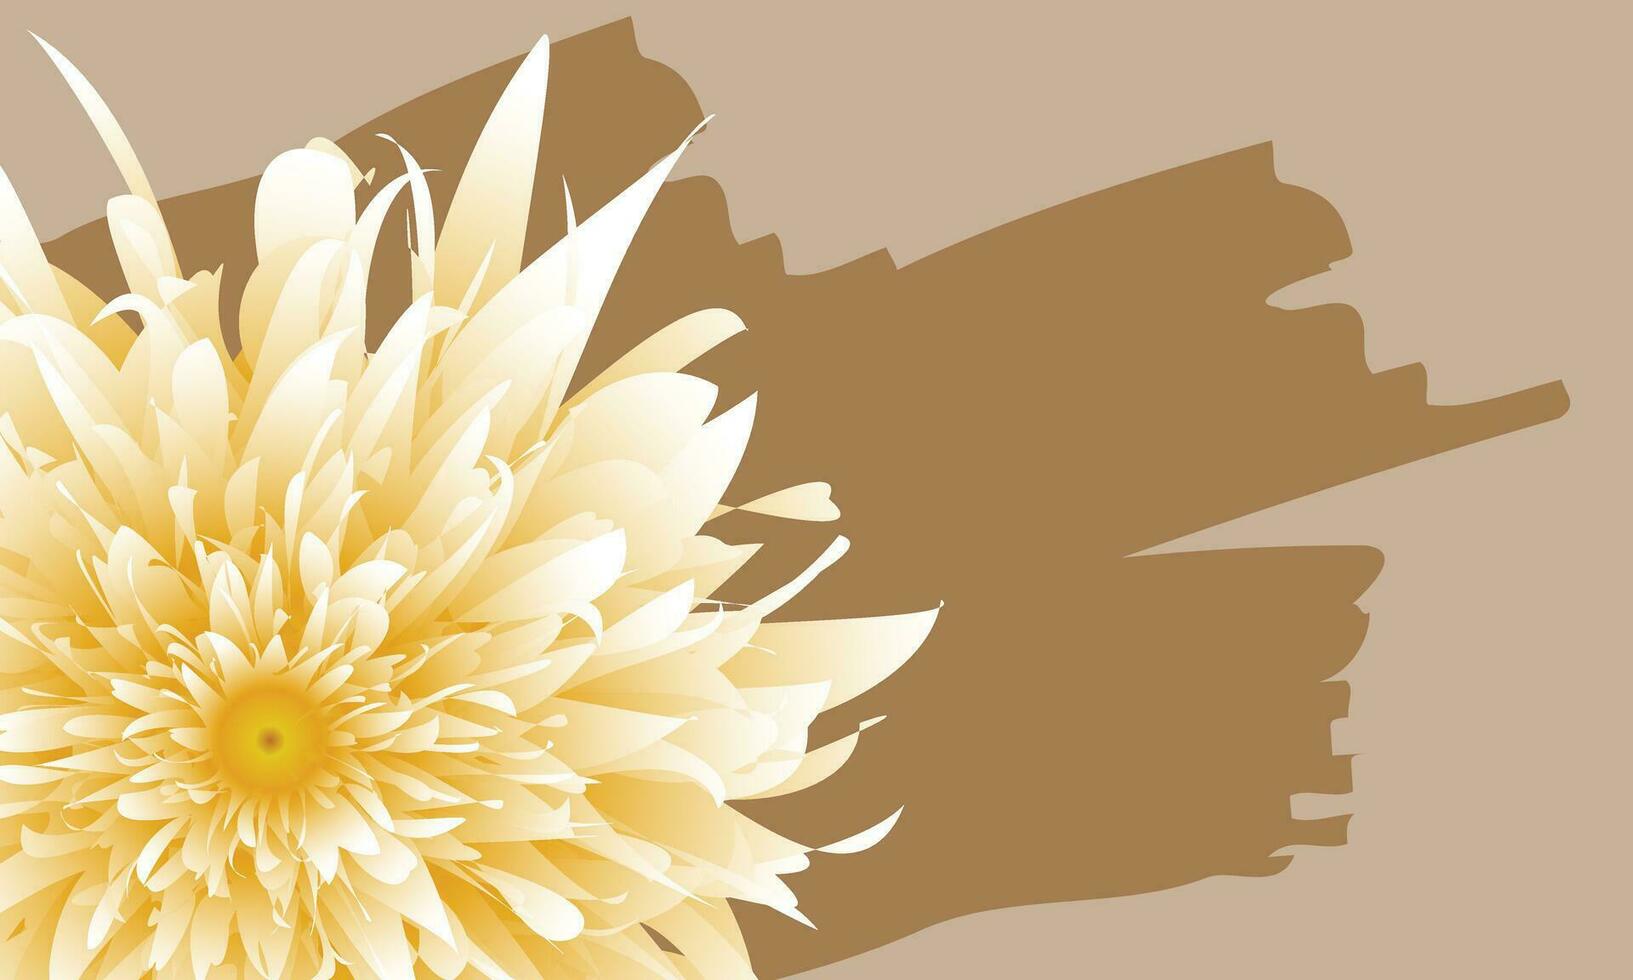 abstrakt gul blomma med brun Färg måla på ljus brun bakgrund. vektor